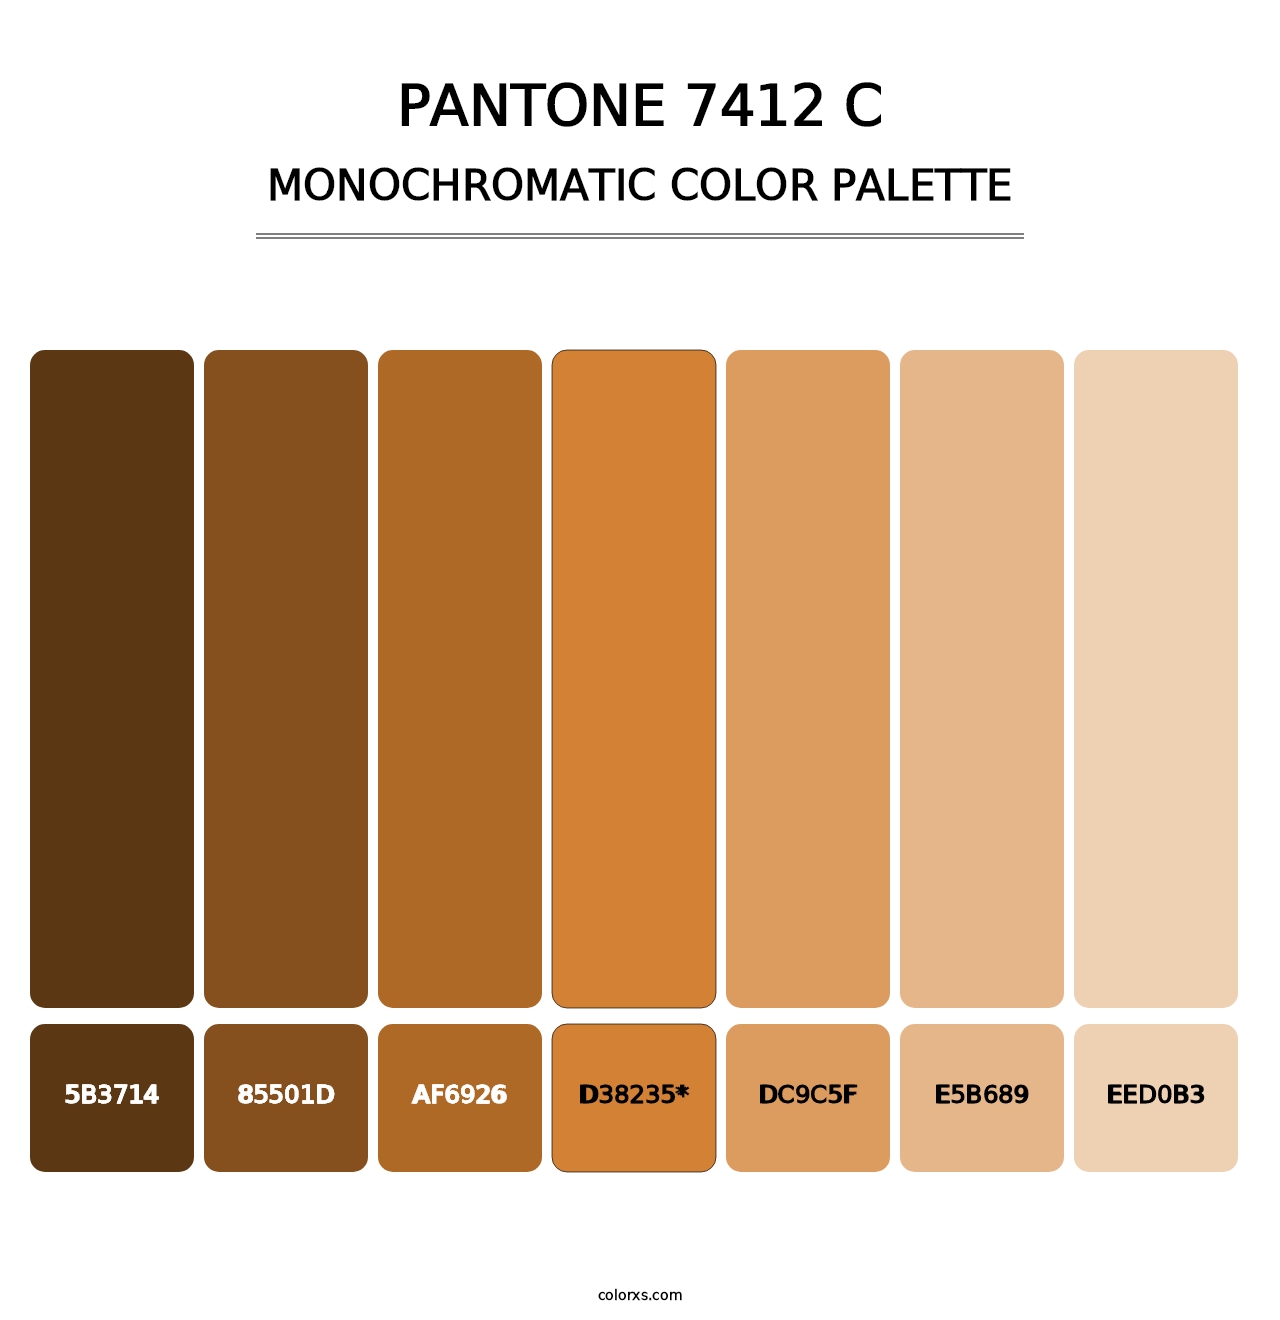 PANTONE 7412 C - Monochromatic Color Palette